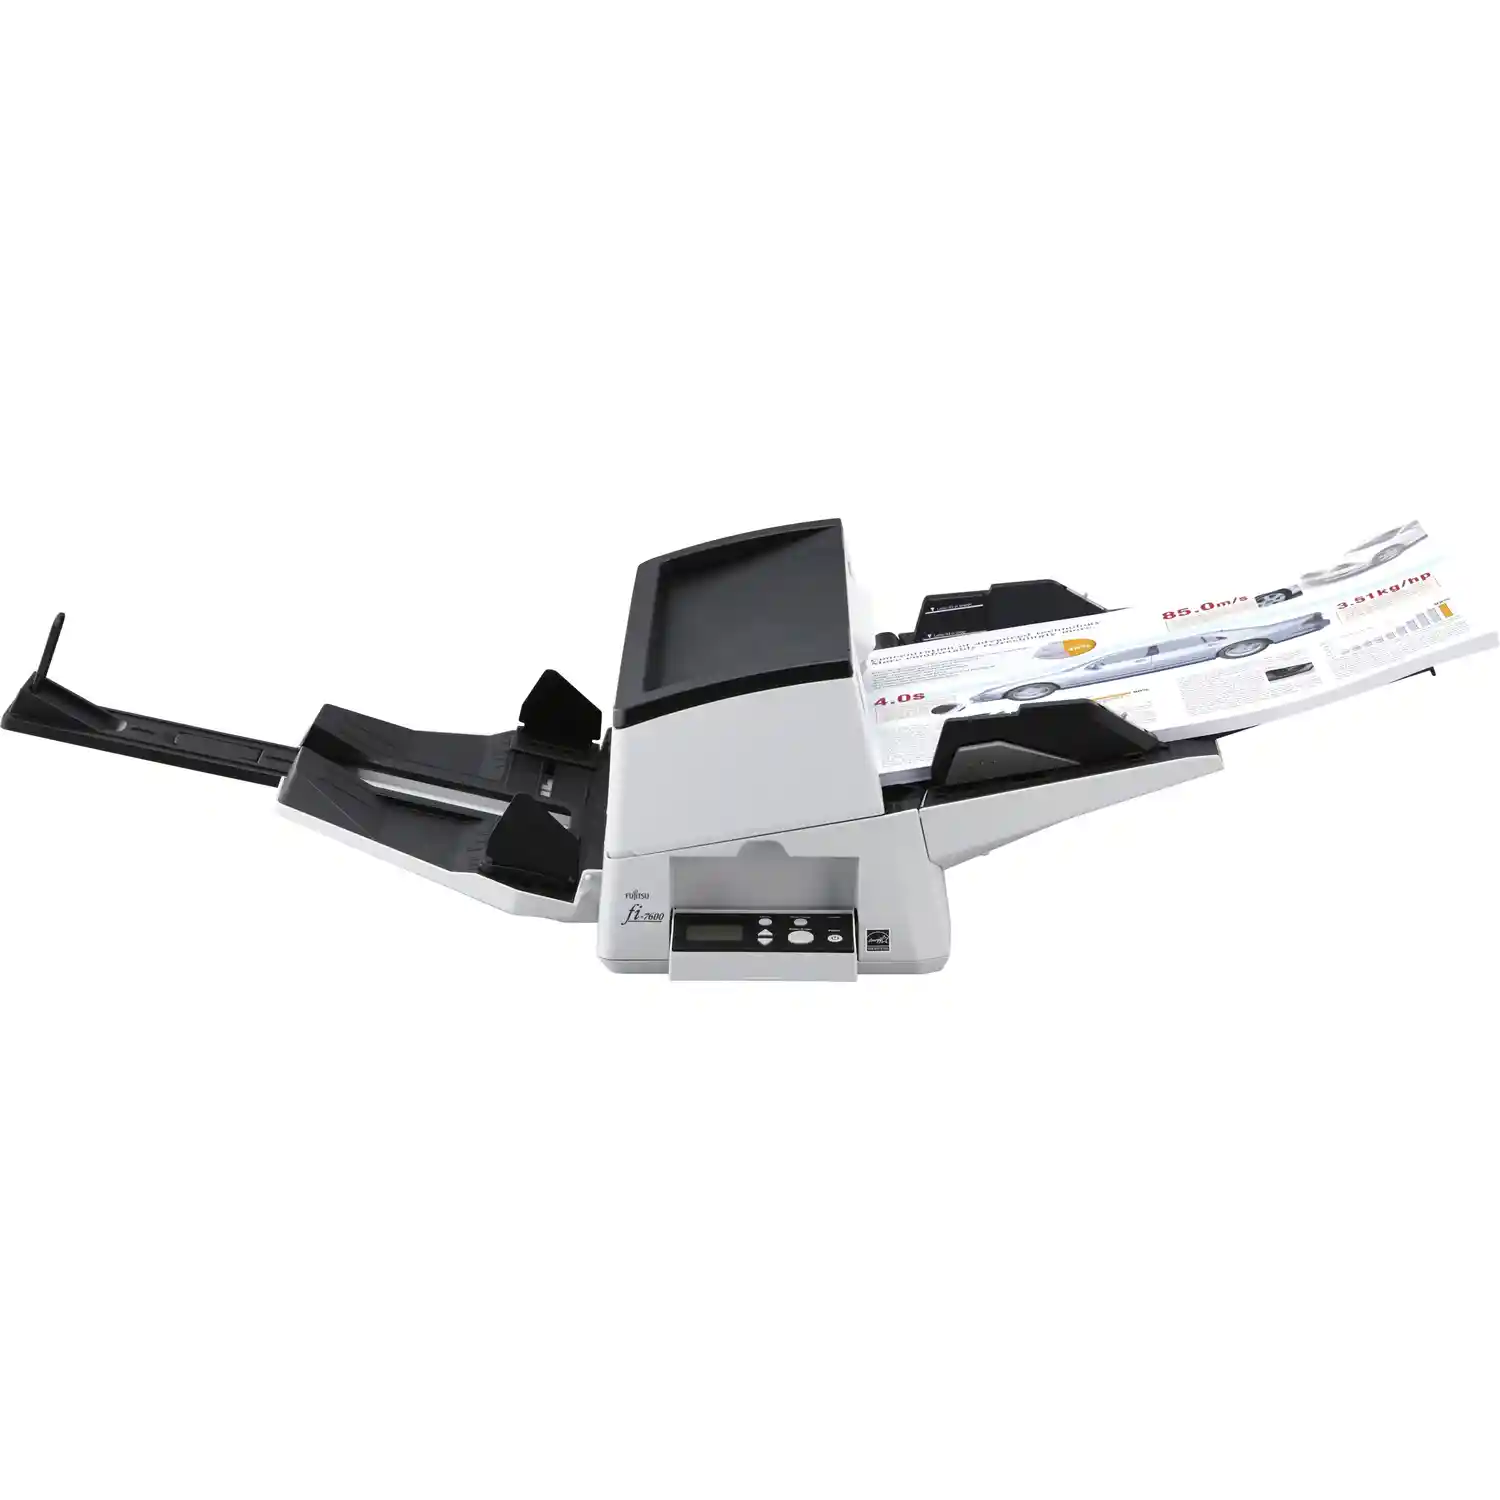 Сканер FUJITSU fi-7600 (PA03740-B501)